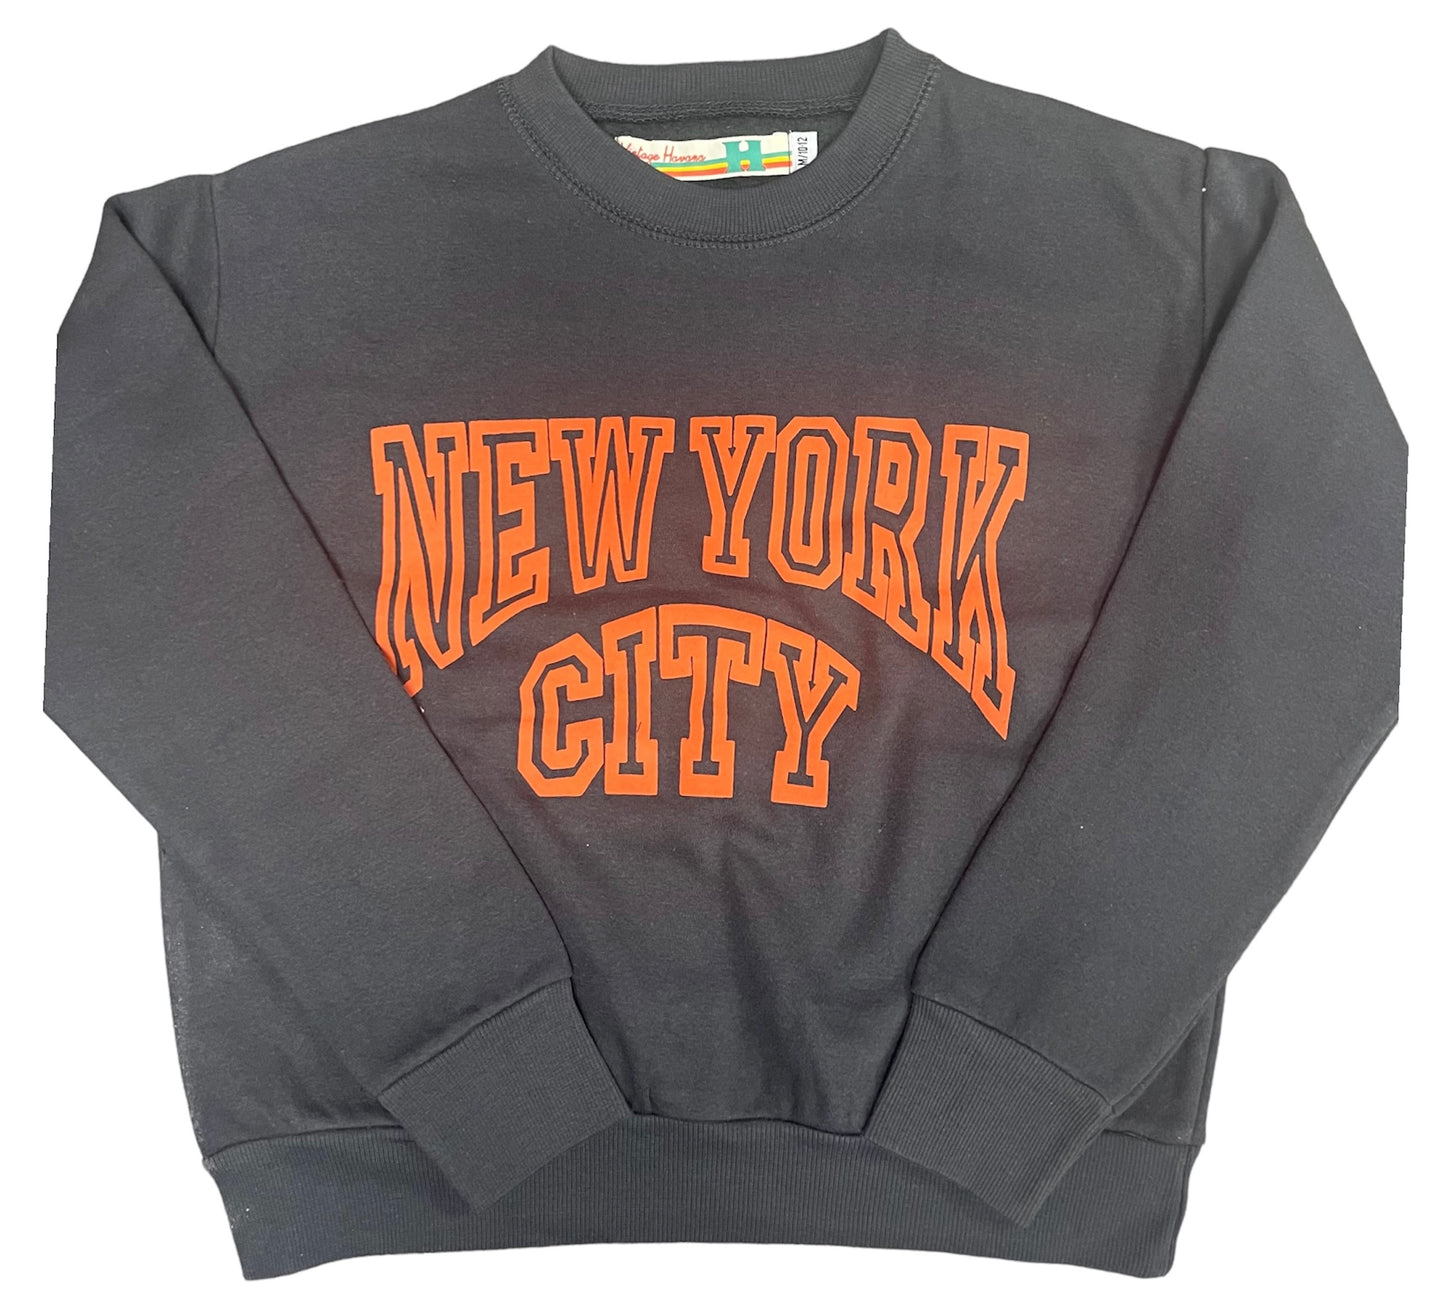 Black oversized NYC sweatshirt